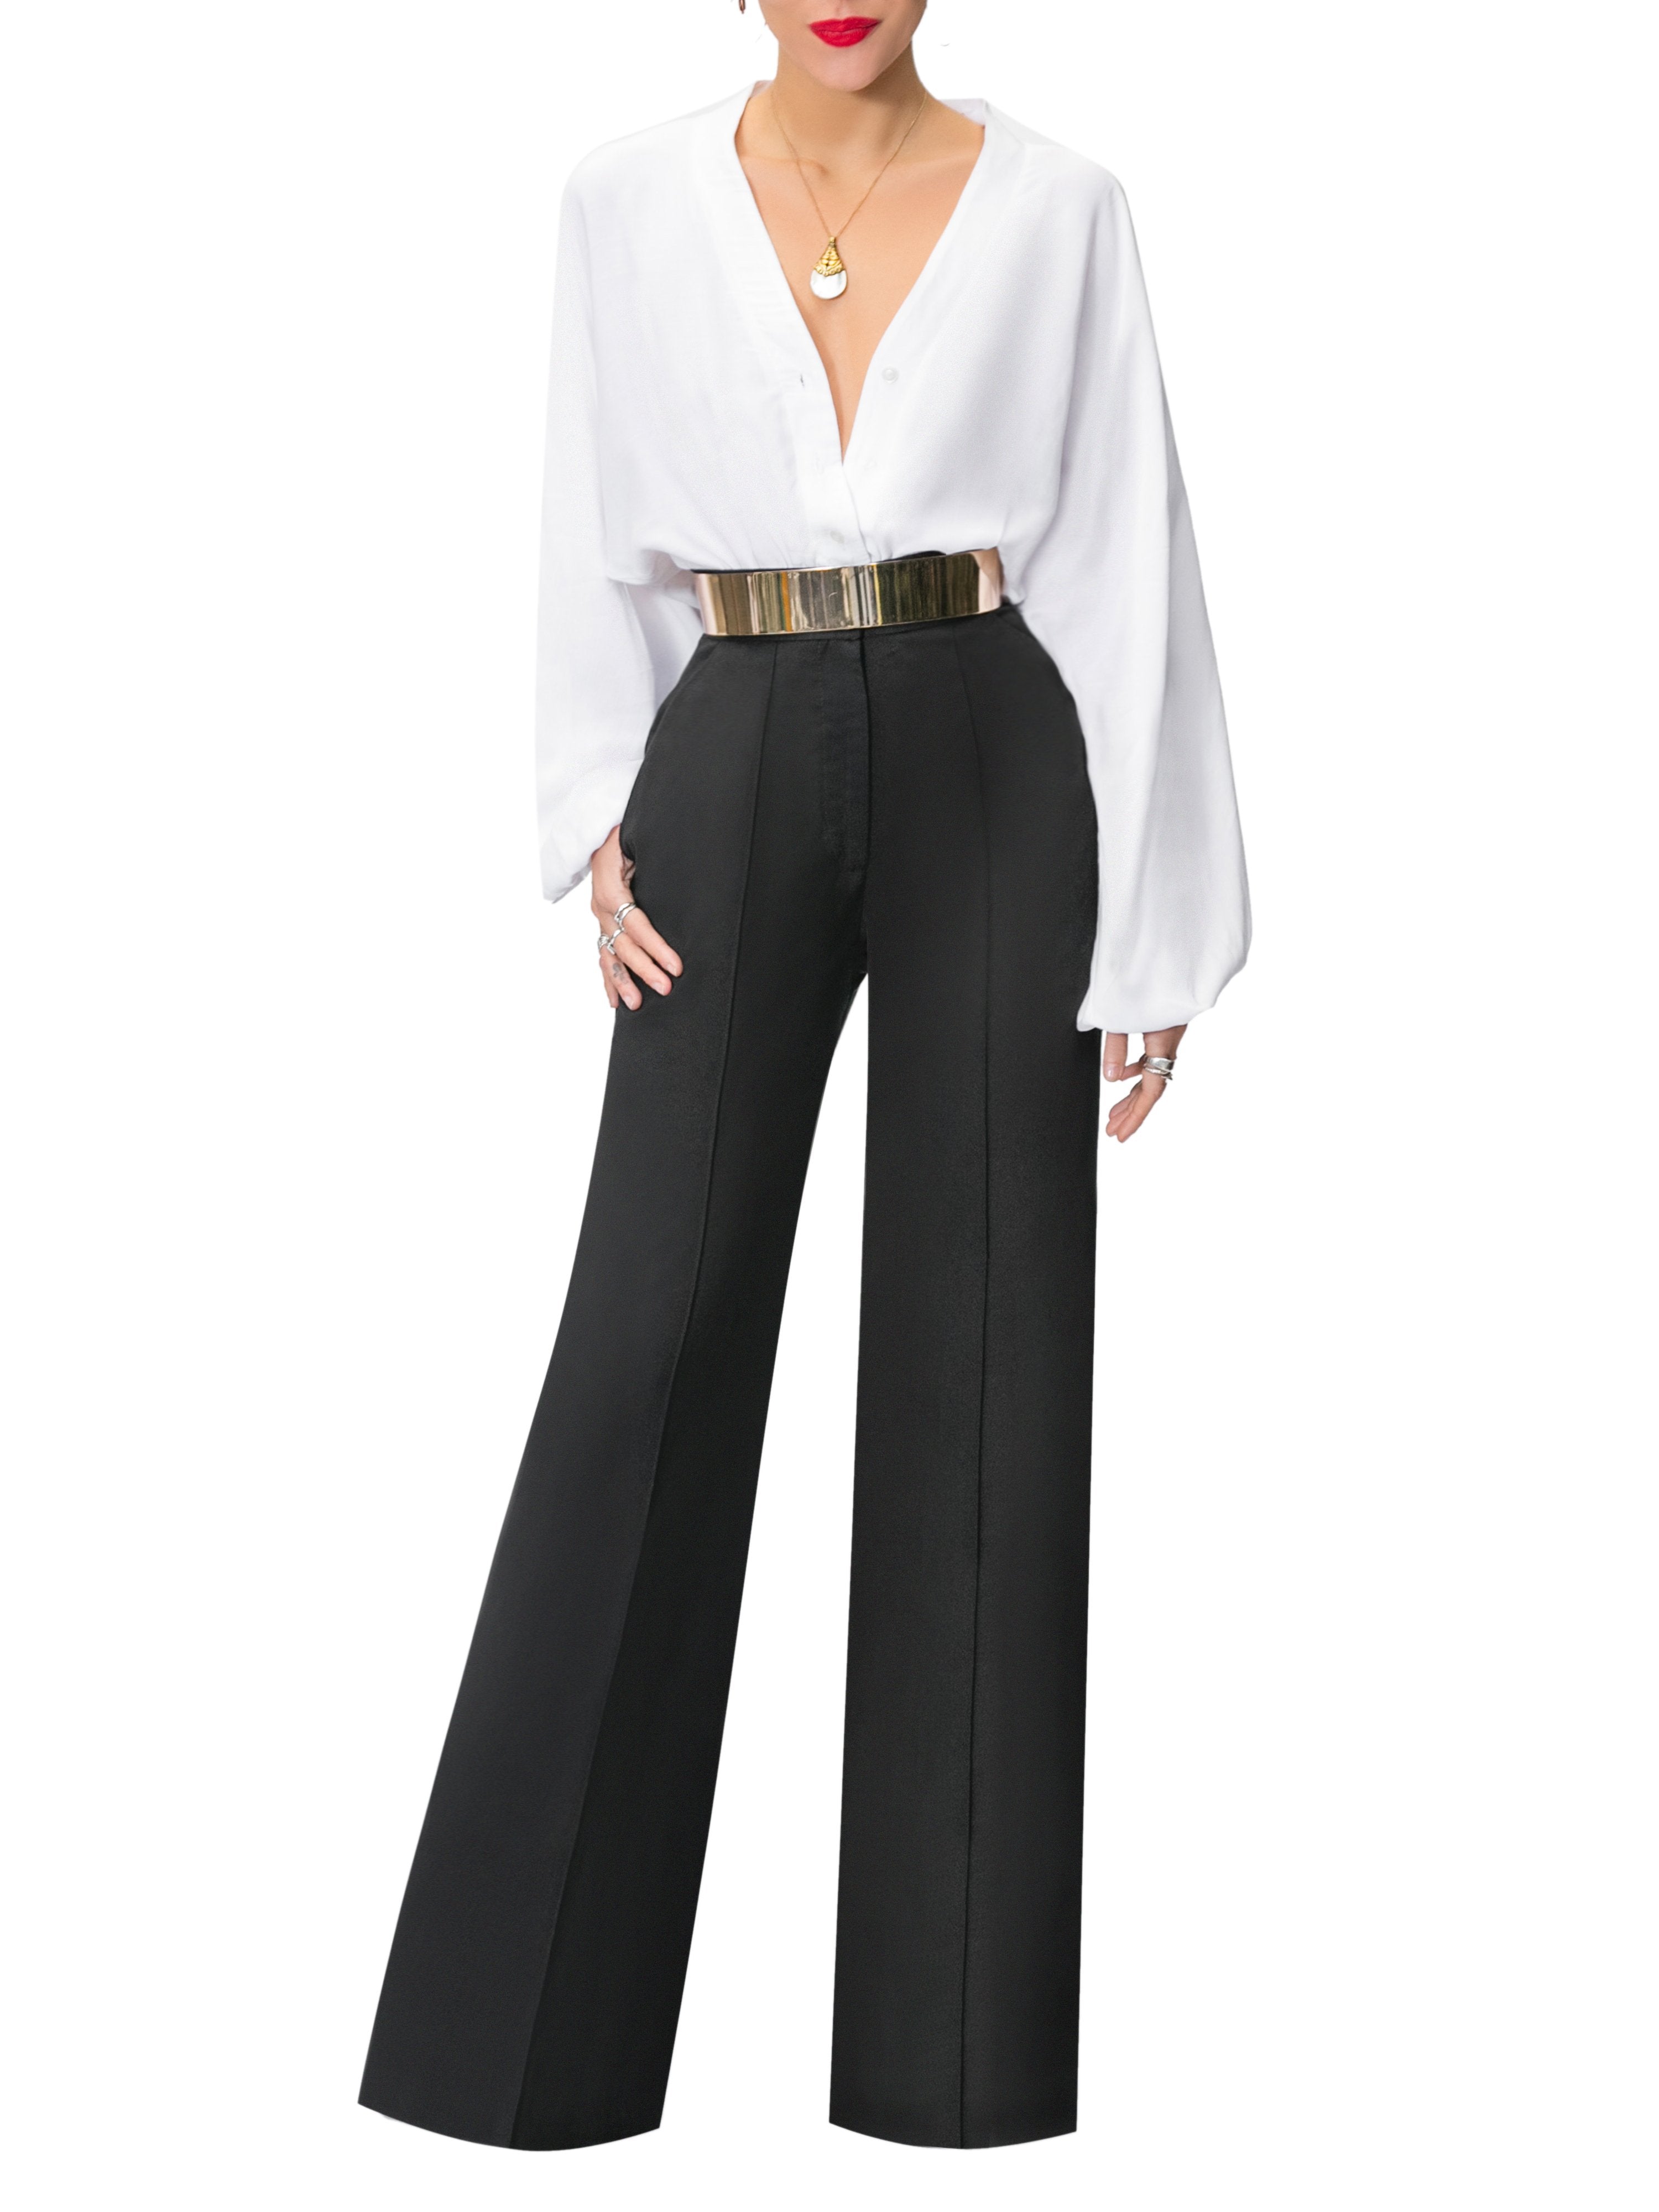 Elegant Long Sleeve Single-Breasted V Neck High-Waist Belted Suit